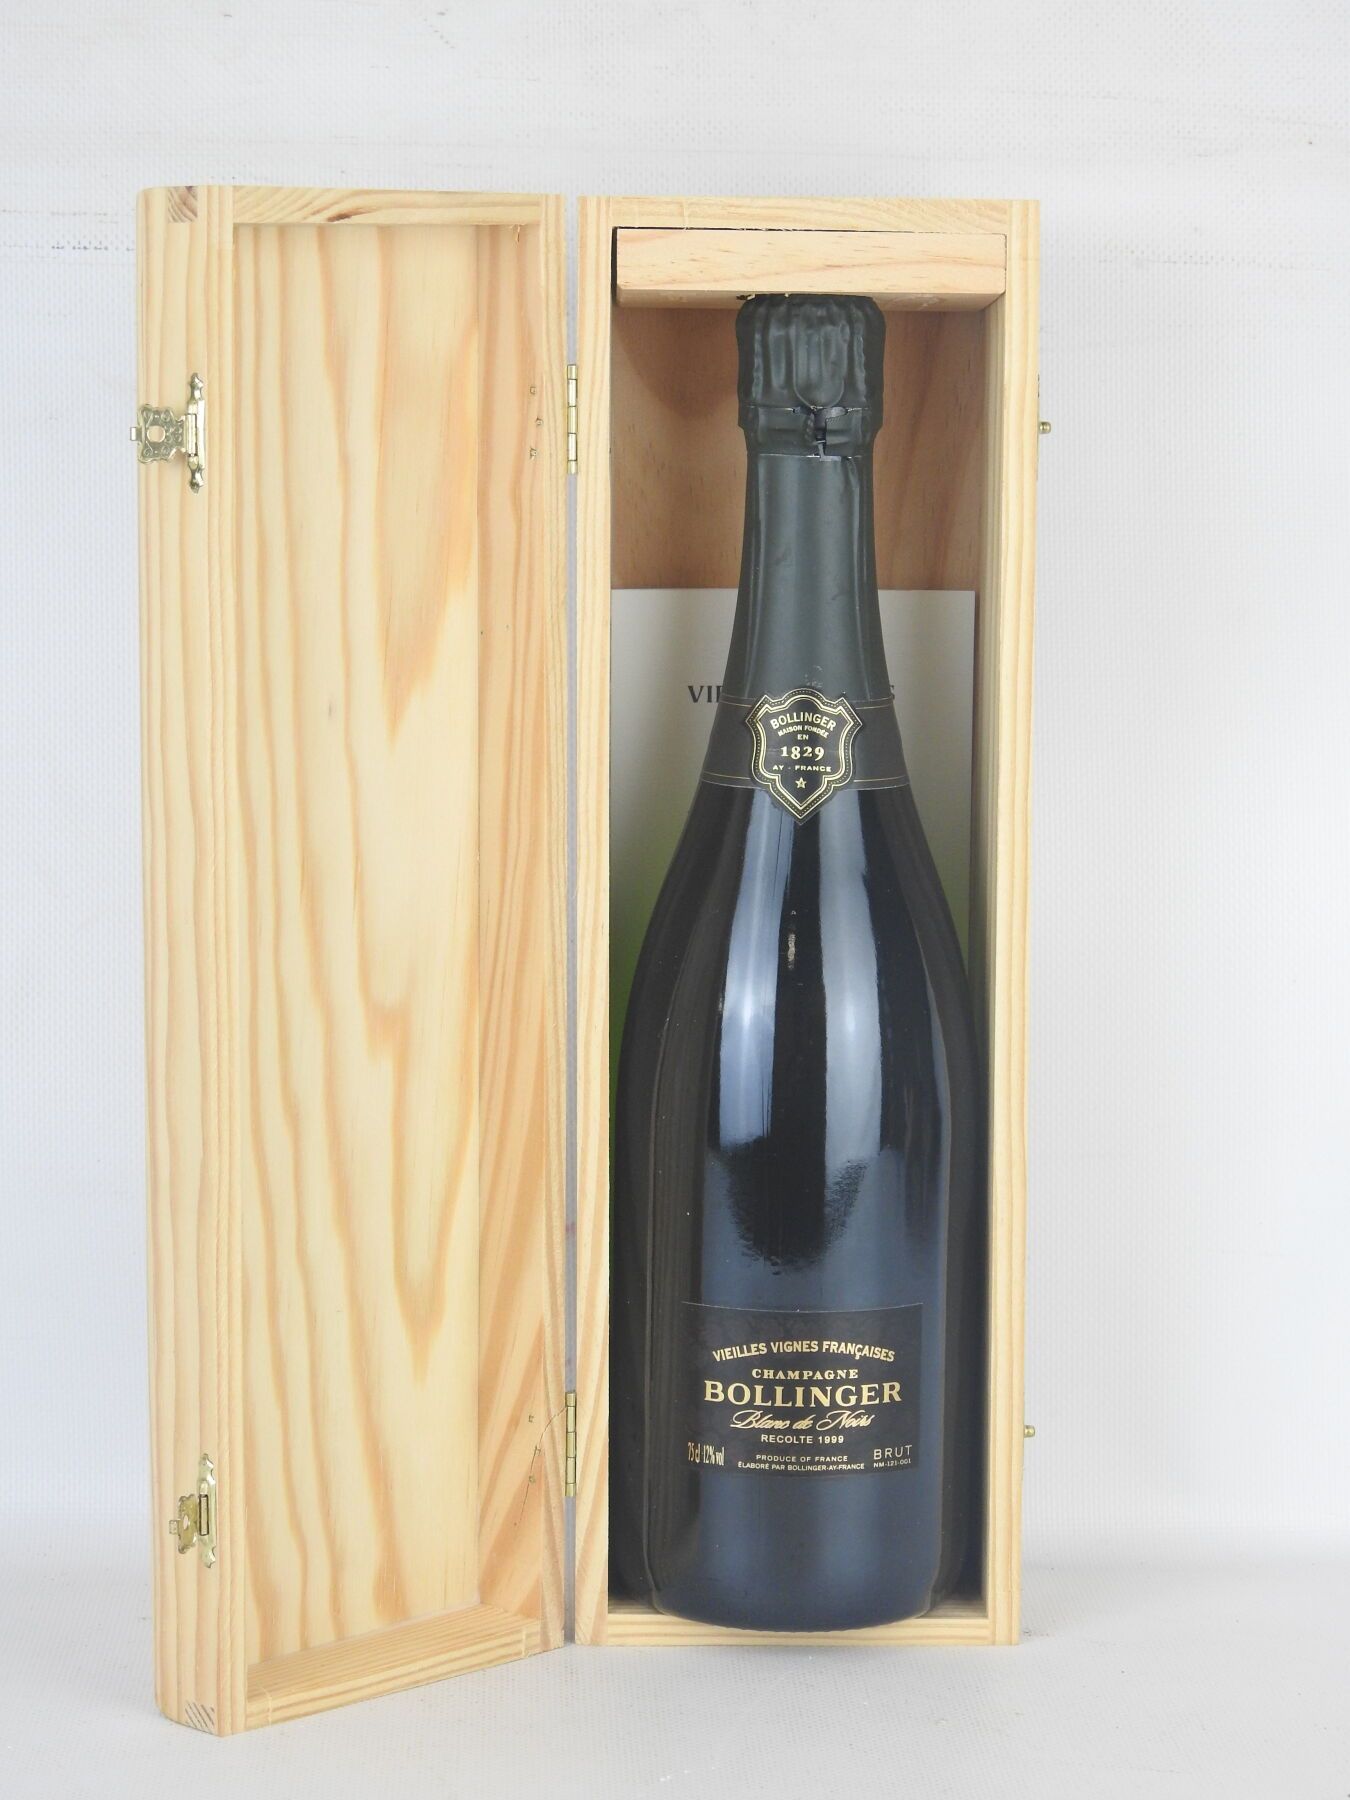 Null 1 bottle Champagne Bollinger vieilles vignes francaise 1999. Wooden box.